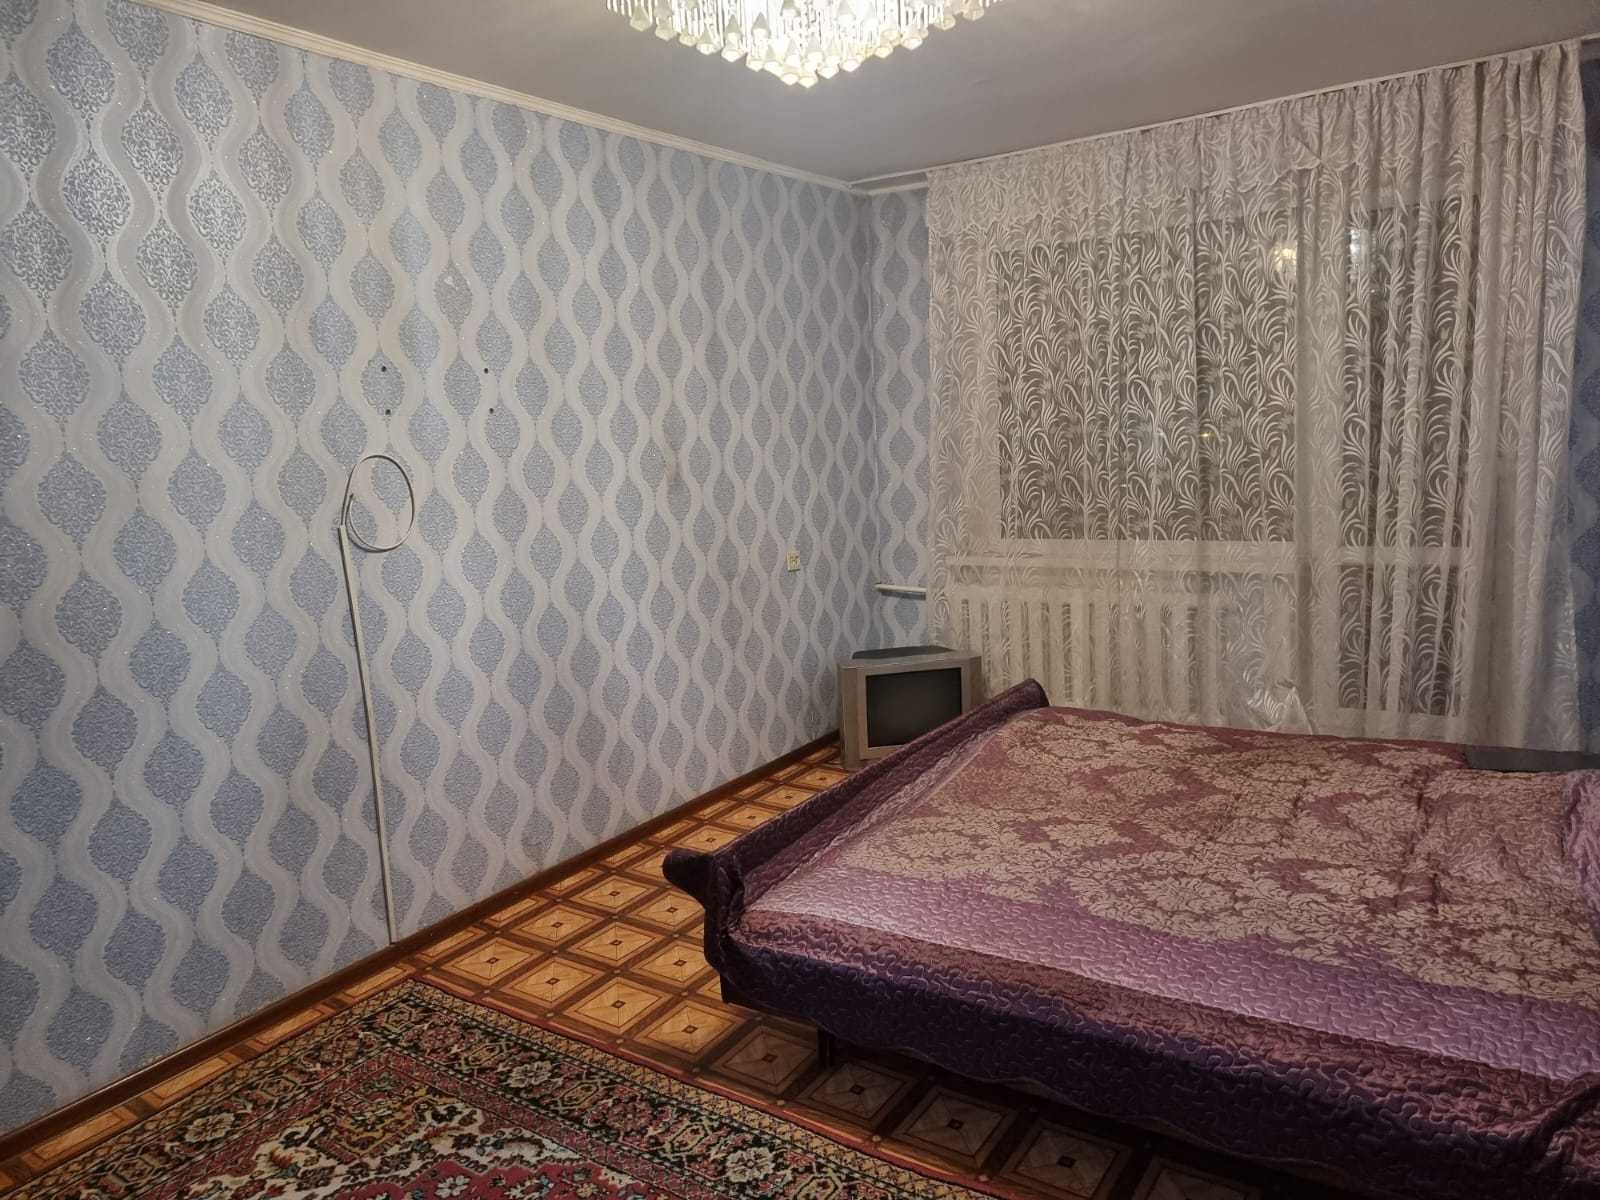 Продам 1- комнатную квартиру на 26 квартале по ул. Казахстанская